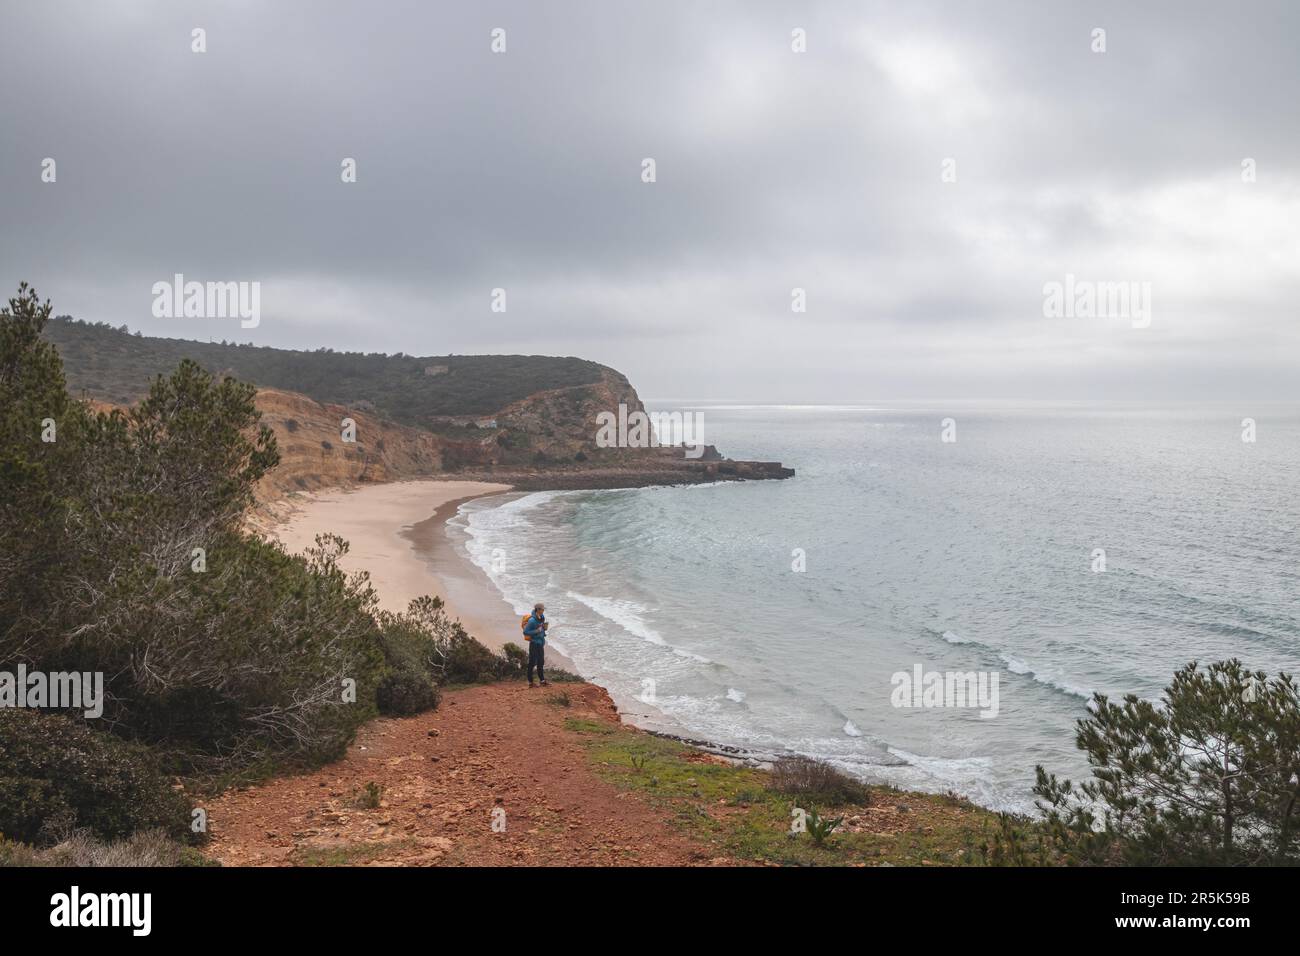 Wanderer stehen am Rand einer Klippe und beobachten den Strand unter dem Namen Praia do Burgau an der Südwestküste Portugals in touristischer und berühmter Weise Stockfoto